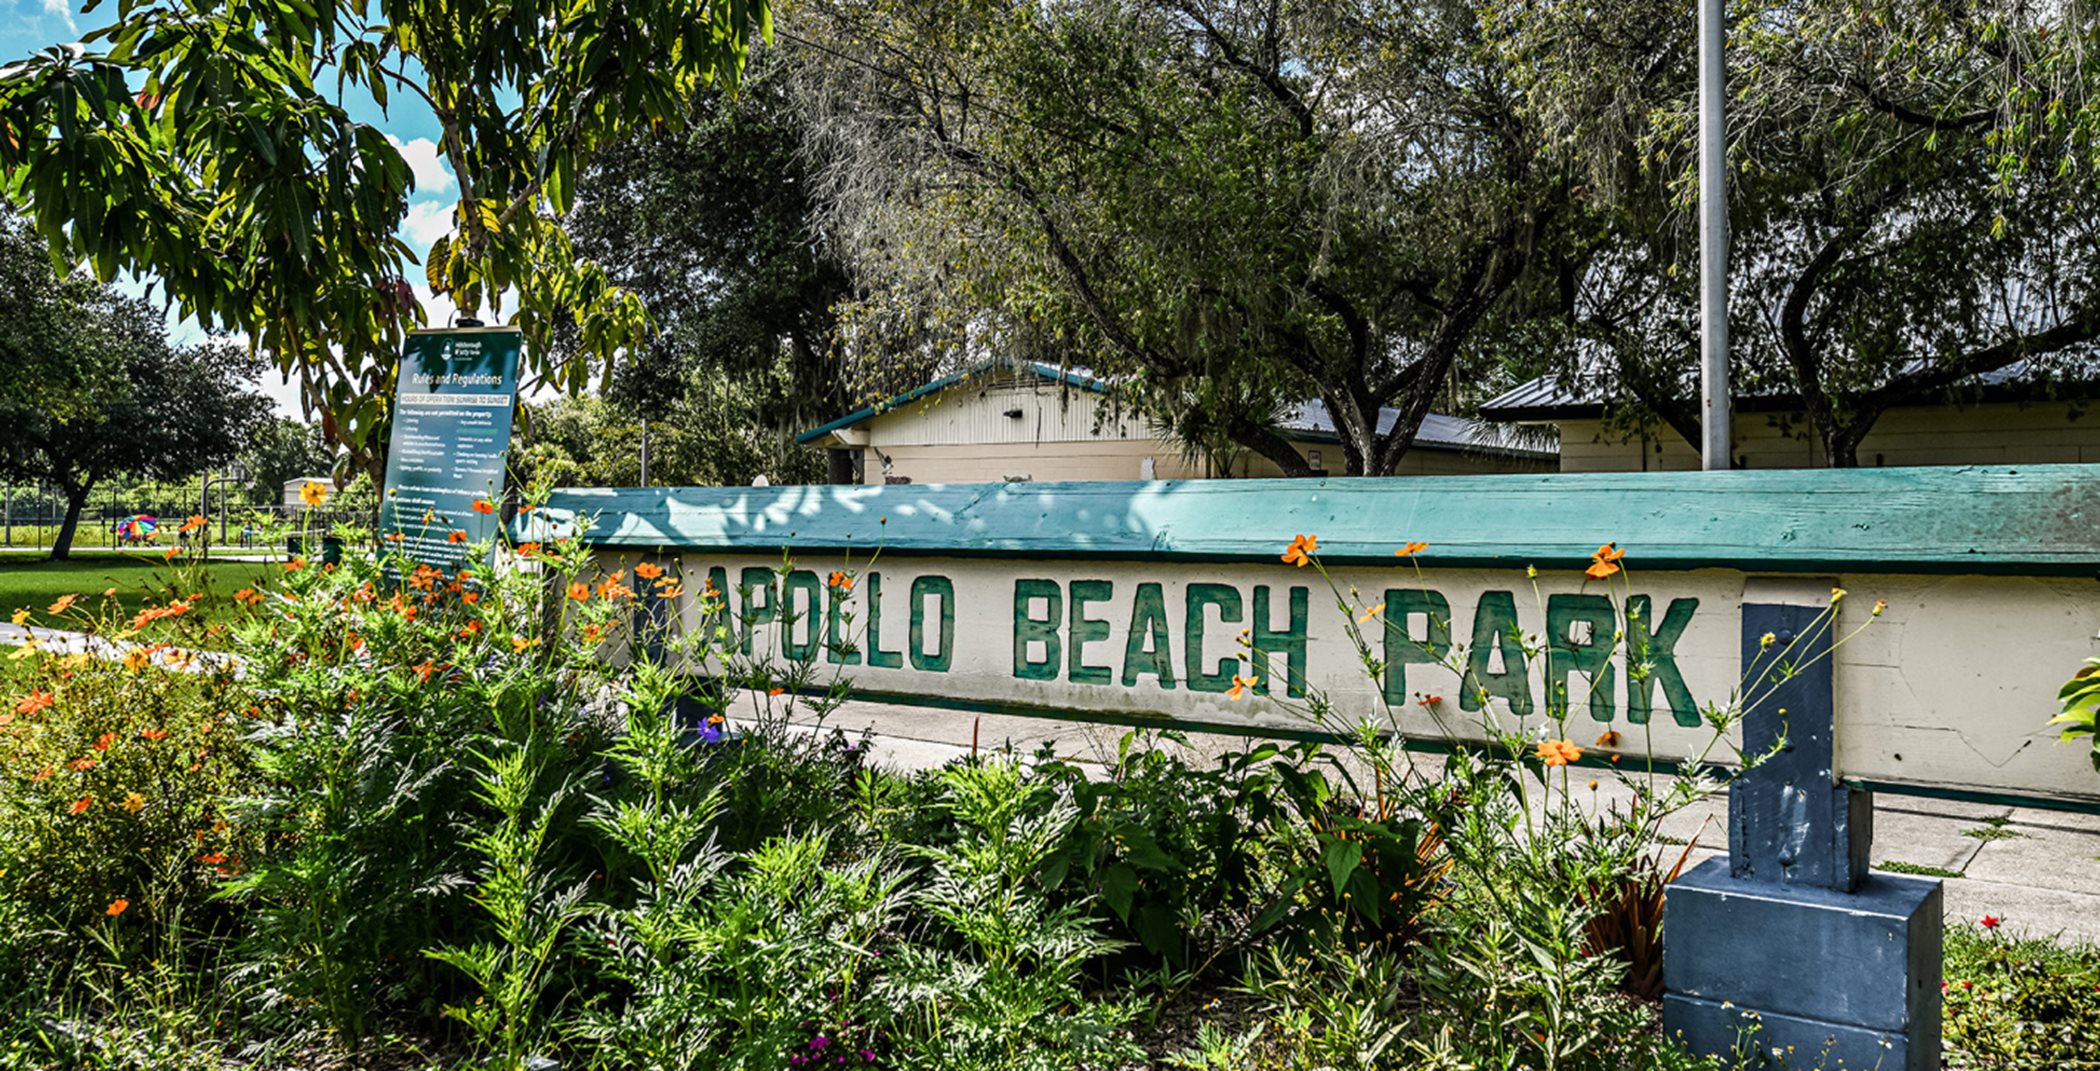 Apollo beach entry sign